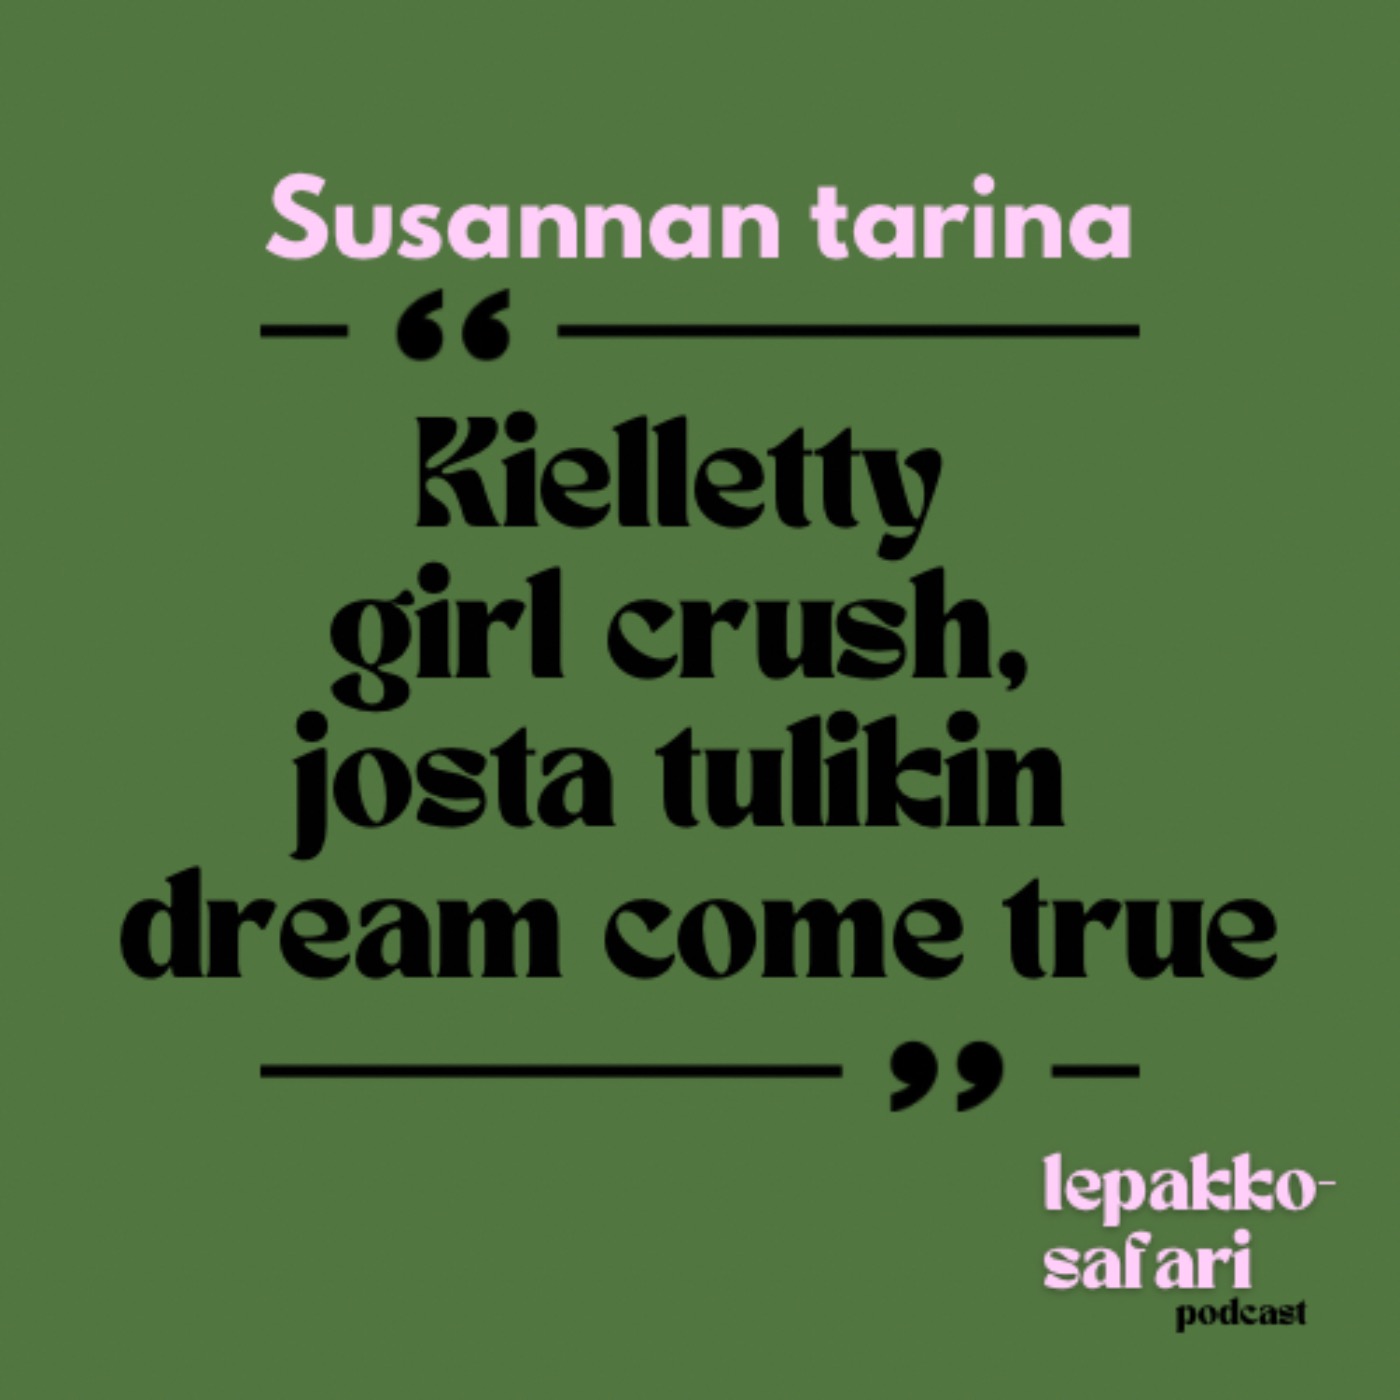 Susannan tarina - Kielletty girl crush, josta tulikin dream come true